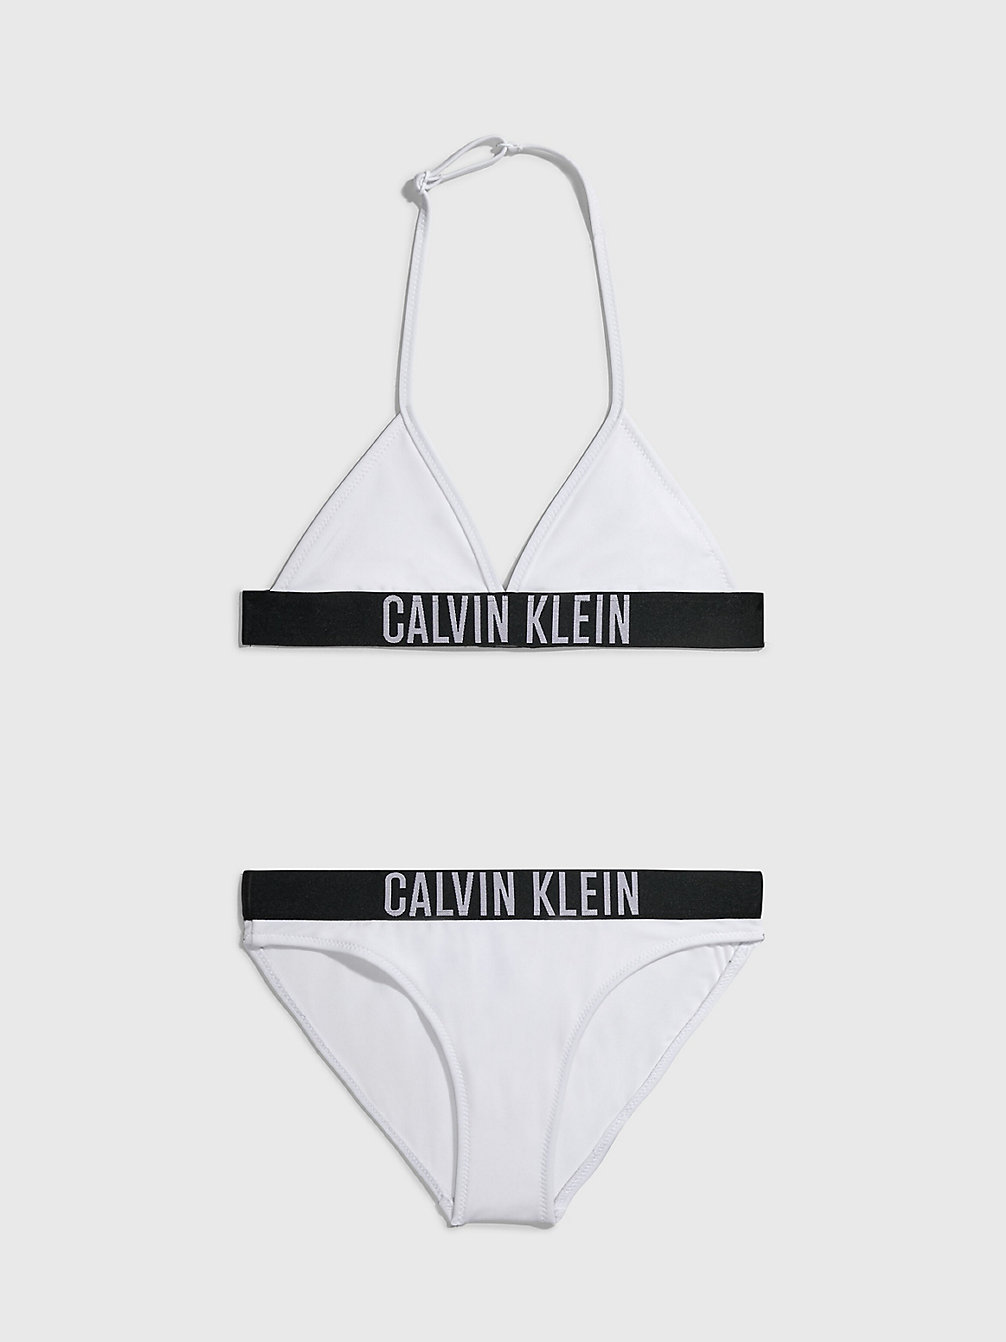 PVH CLASSIC WHITE Triangel-Bikini-Set Für Mädchen - Intense Power undefined Maedchen Calvin Klein